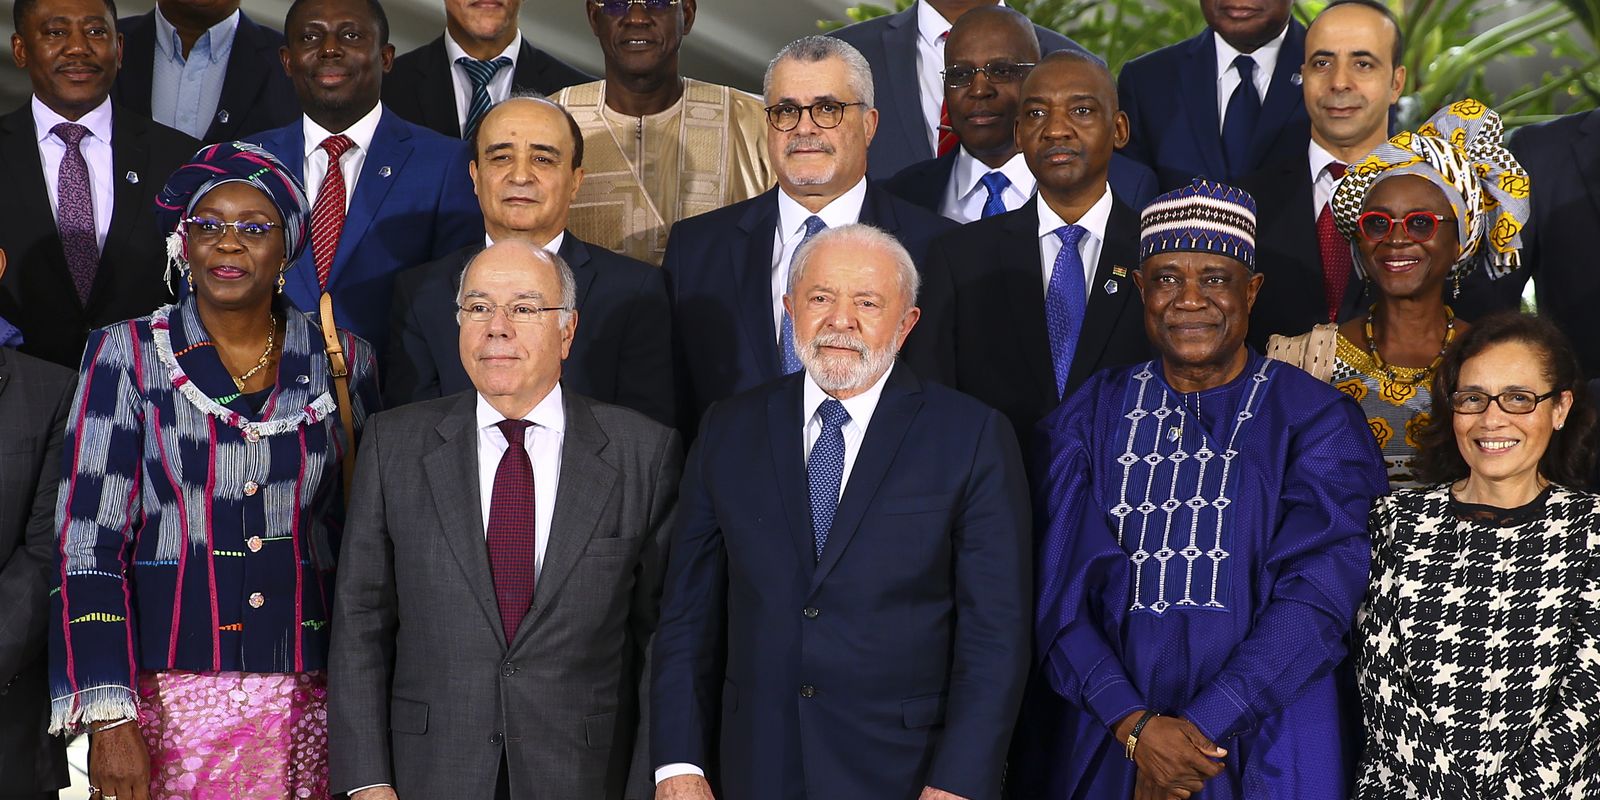 Brasil deve atualizar sua política para continente africano, diz Lula